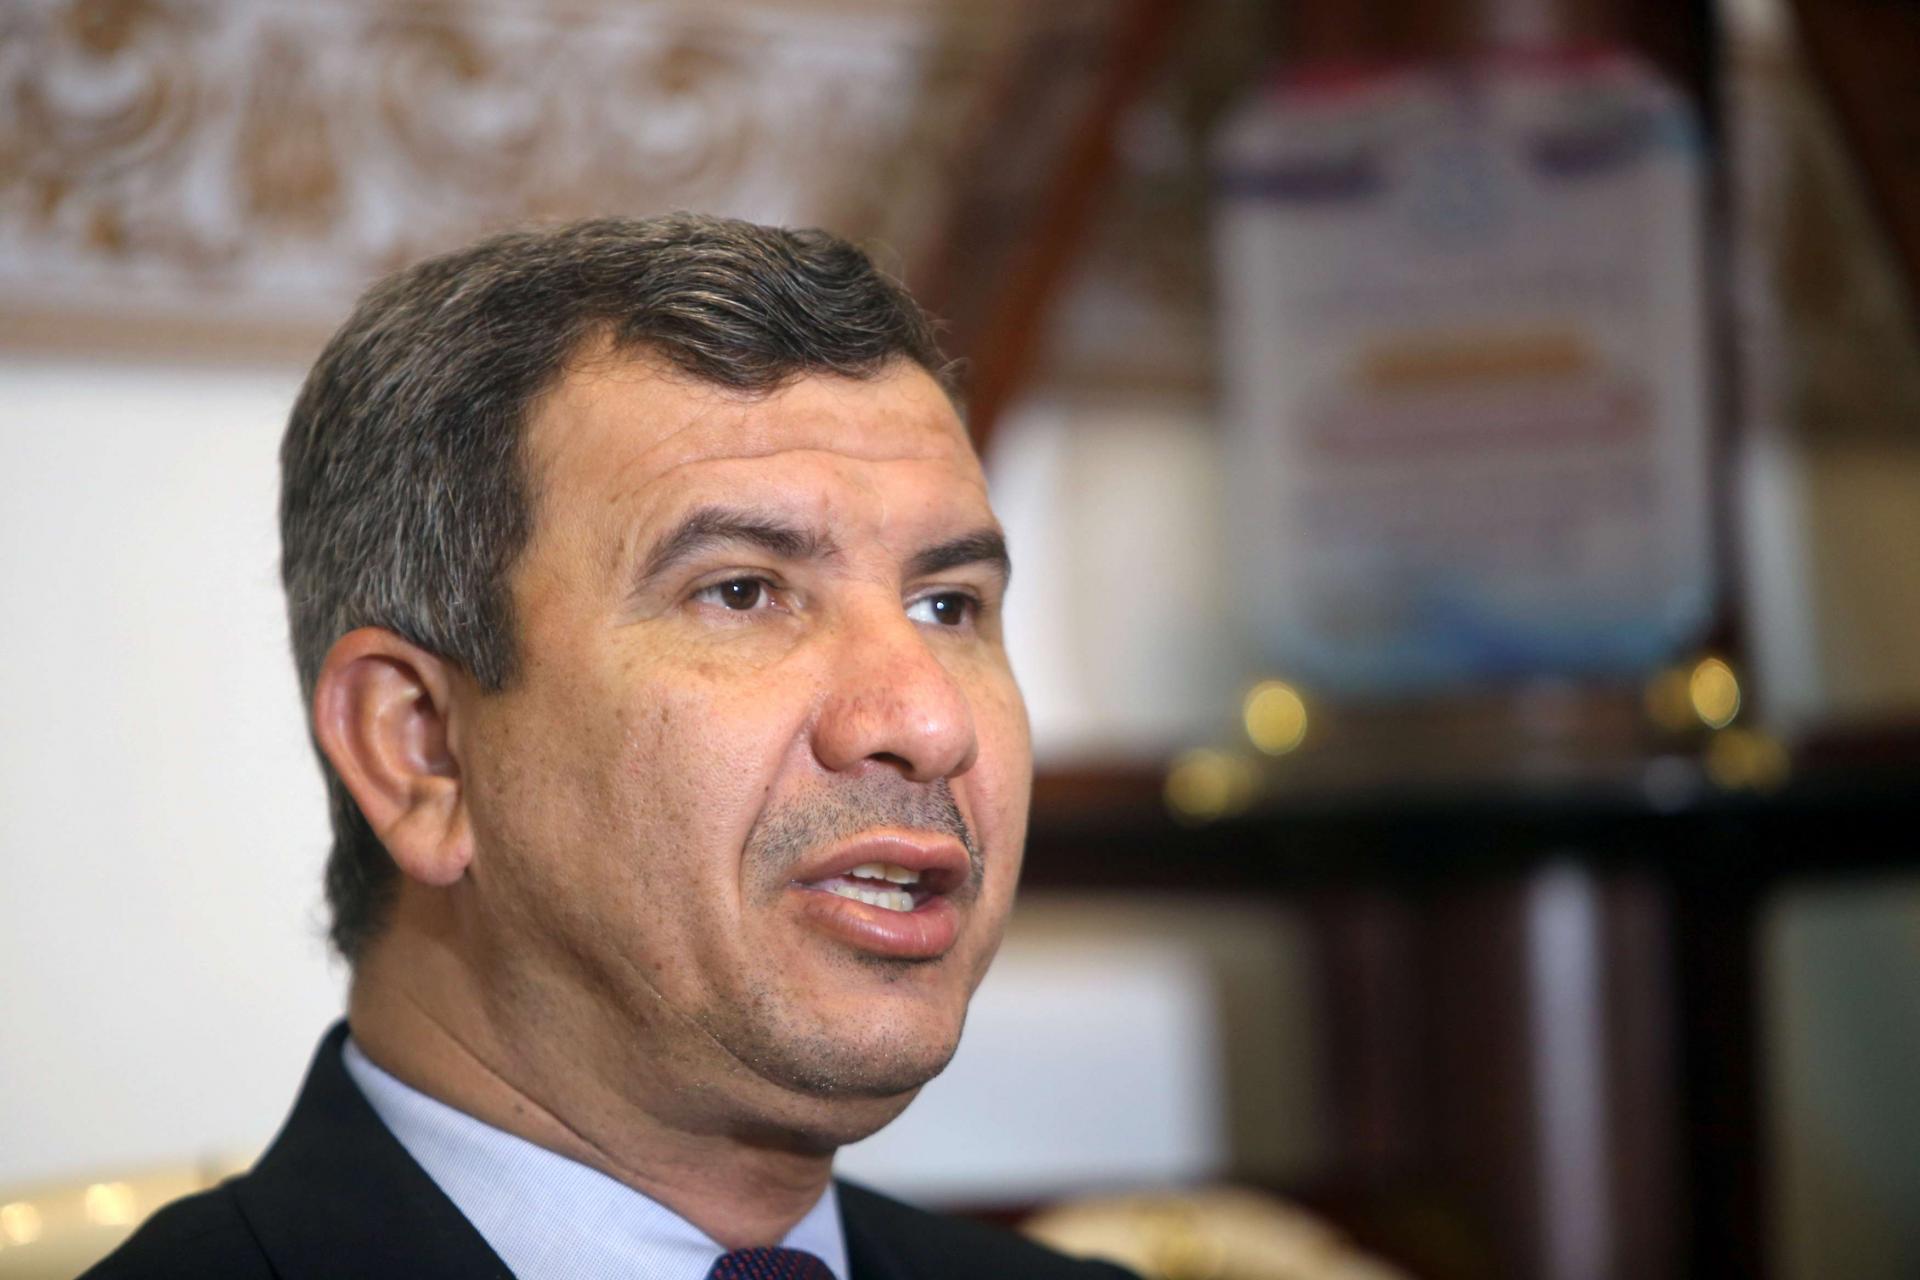 وزير النفط العراقي احسان عبد الجبار